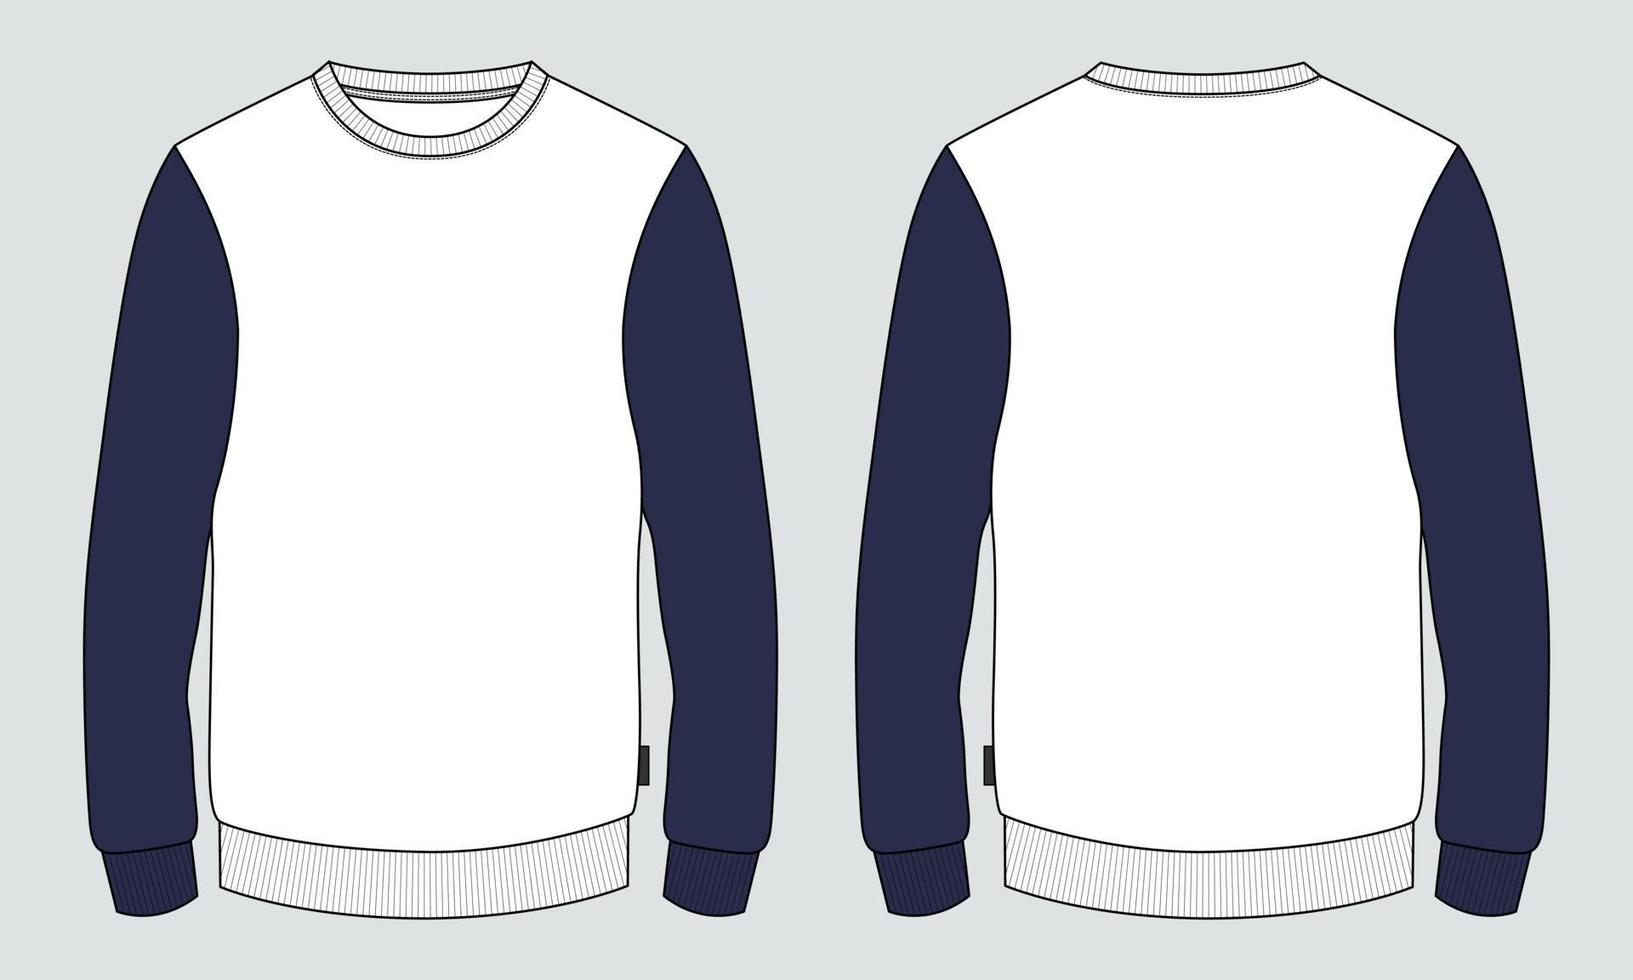 sudadera de manga larga de color azul marino y blanco de dos tonos plantilla de ilustración de vector de dibujo de boceto plano de moda técnica para hombres. maqueta de diseño de ropa